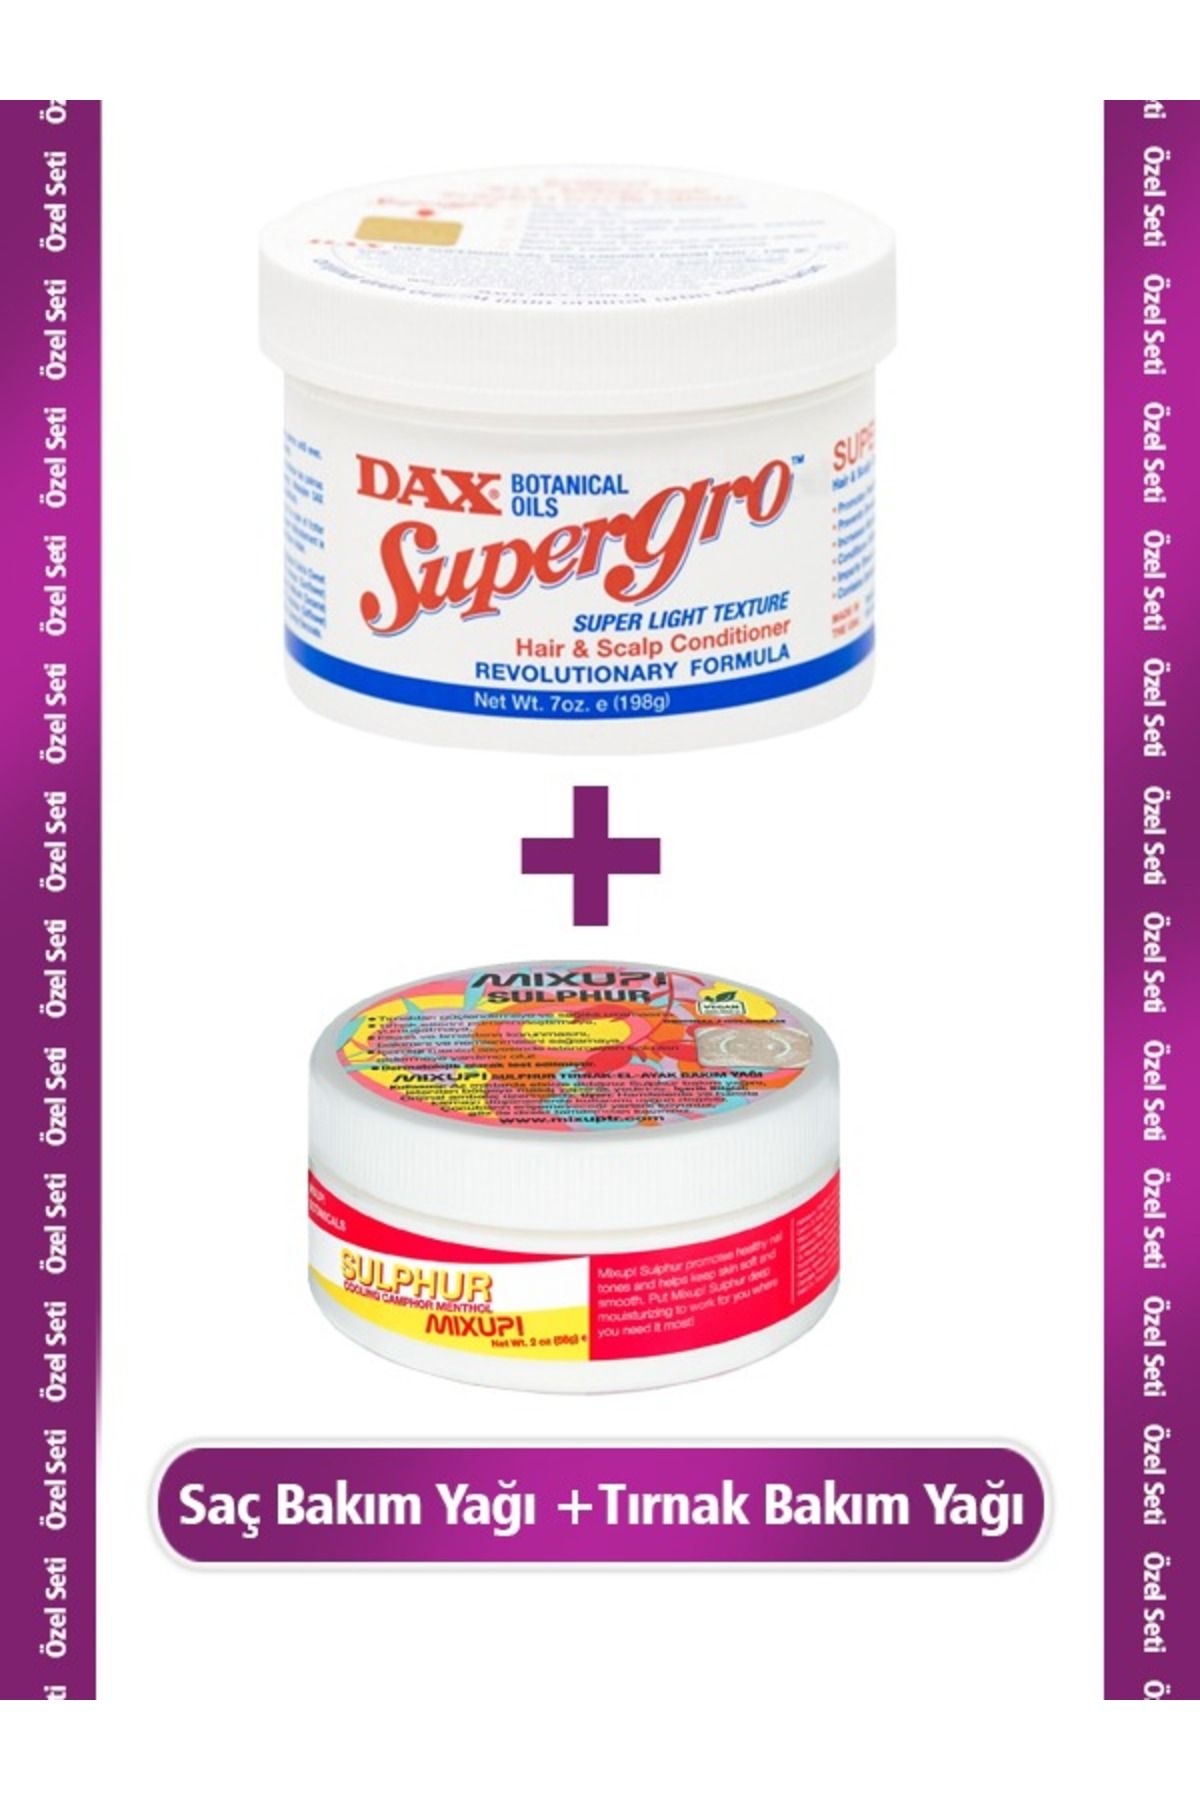 Dax Supergo 198 G - Yavaş Uzayan Saçlara Özel Saç Bakım Yağı + Mixup! Sulphur 56 G - Tırnak Bakım Yağı